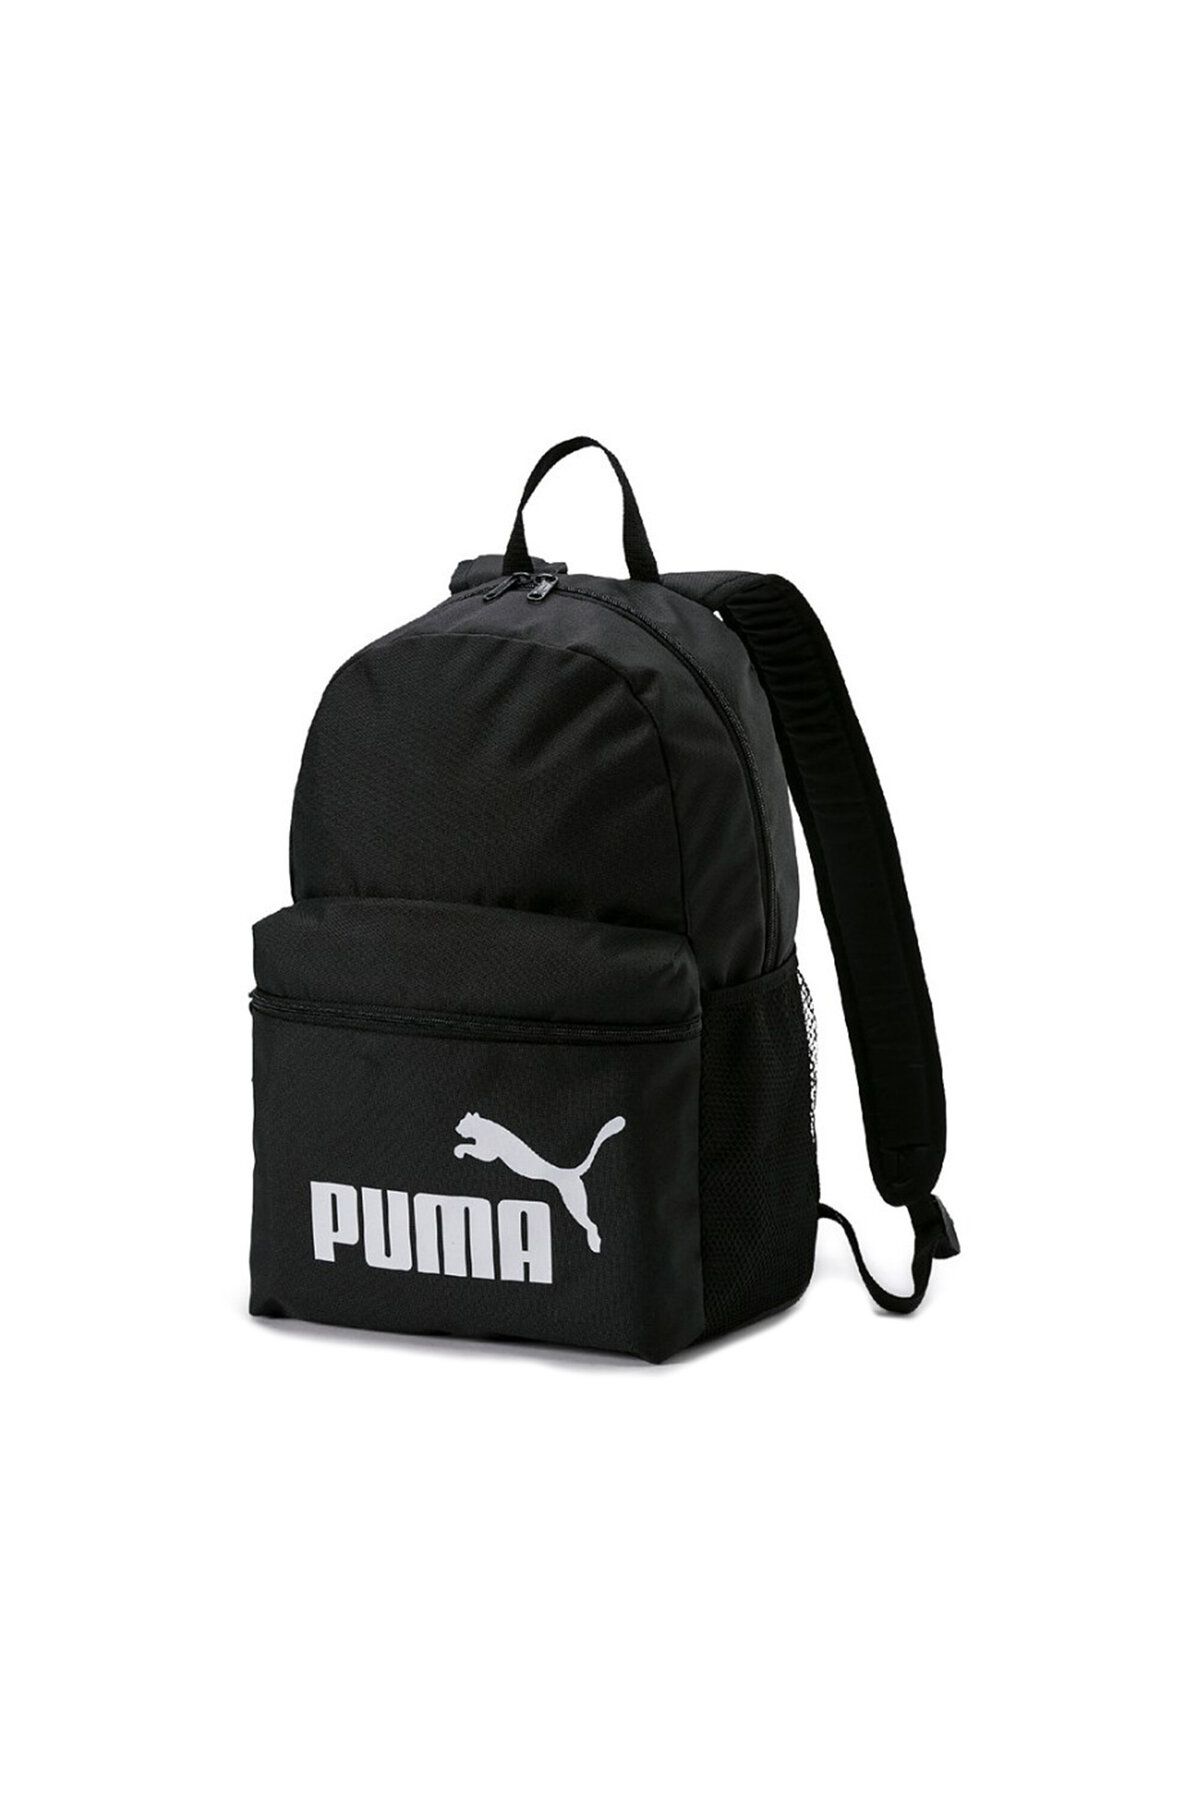 Puma Backpack Günlük Kullanıma Uygun Sırt ve Okul Çantası İlkokul Ortaokul Lise Çantası